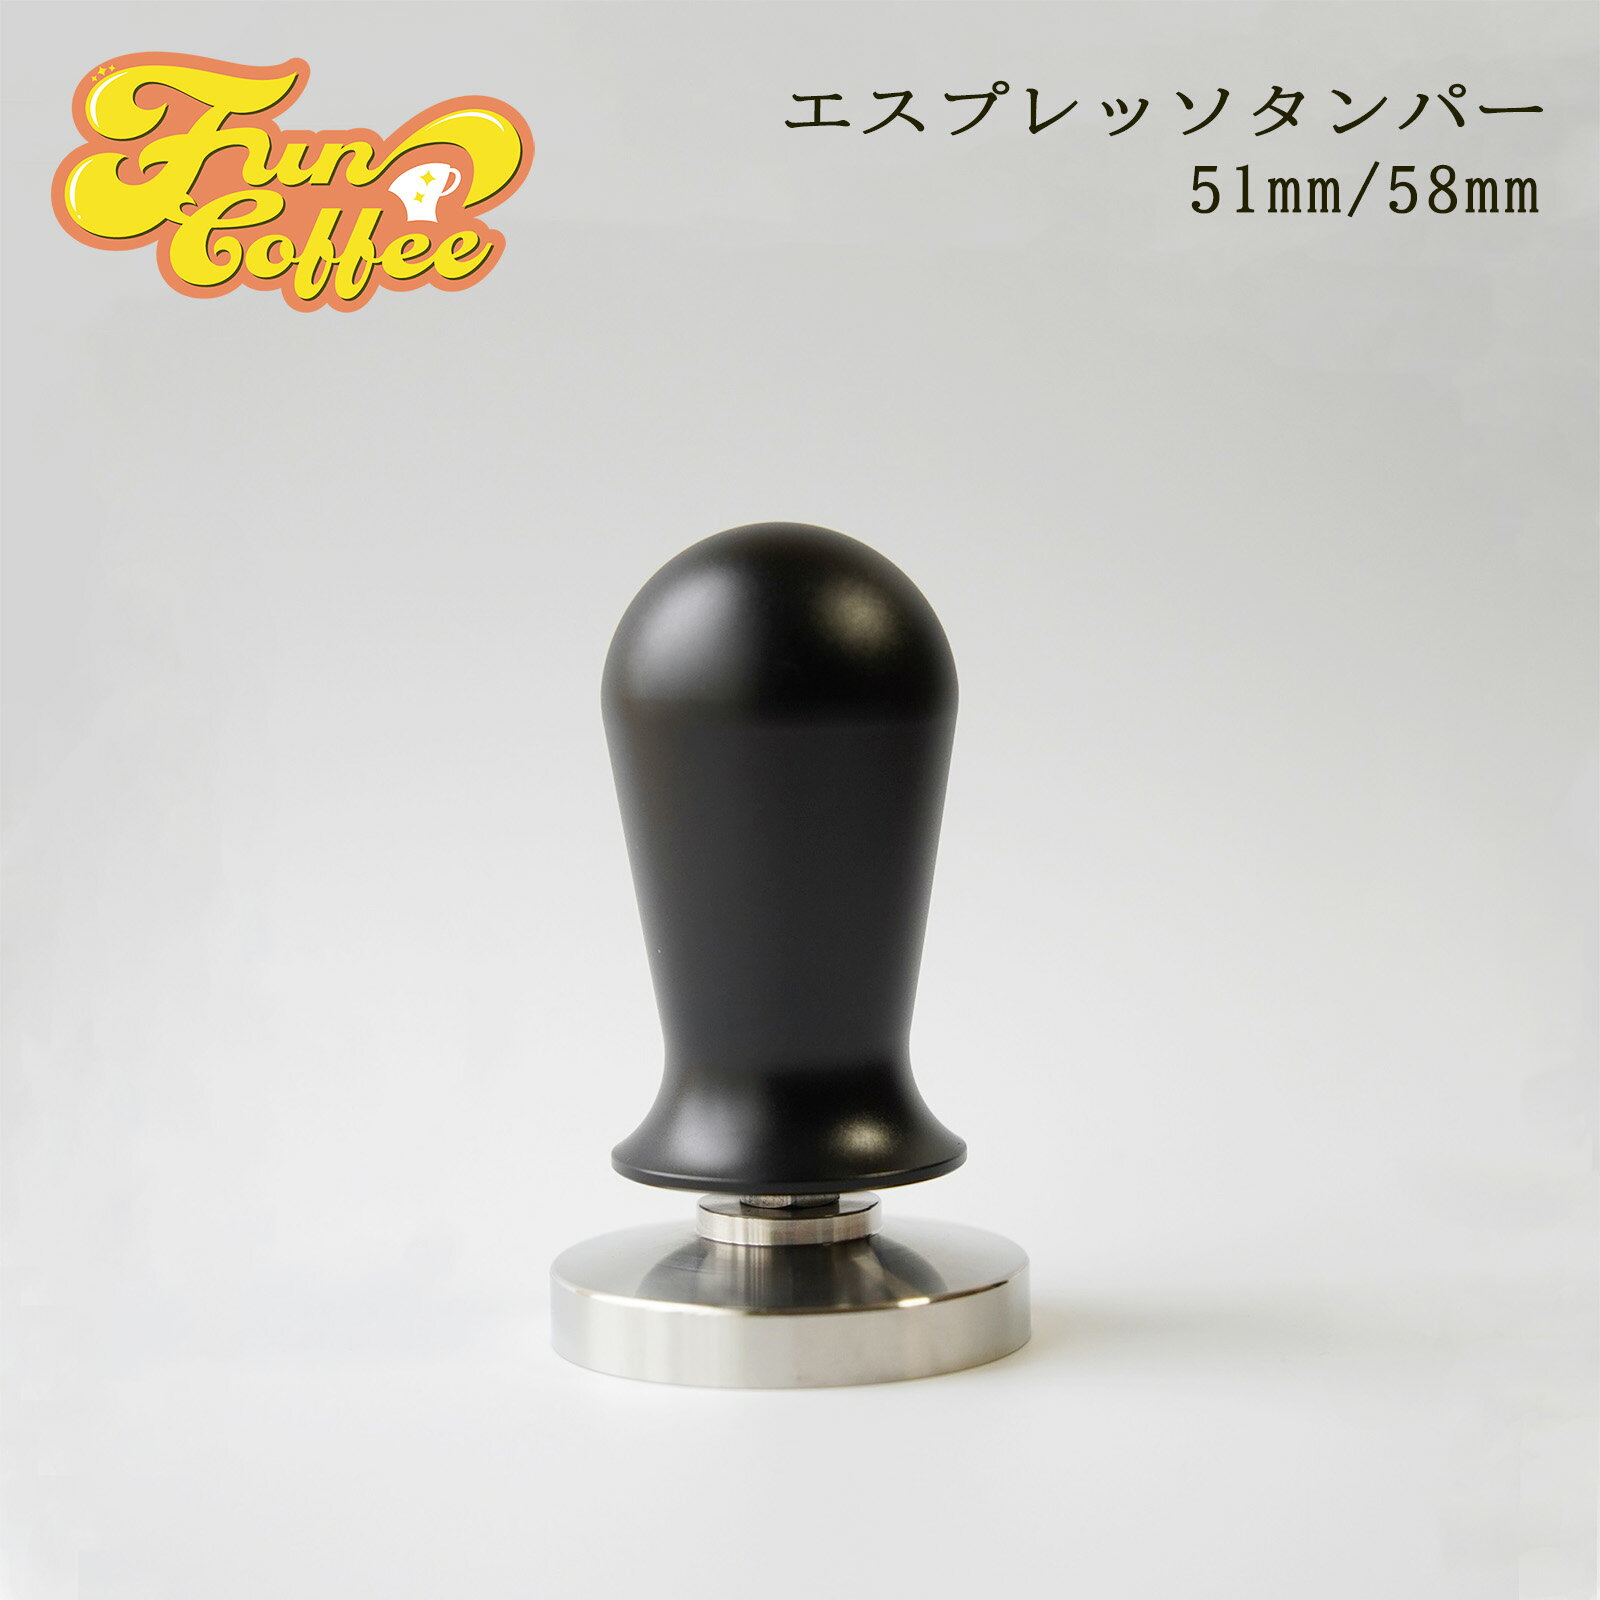 FUN COFFEE エスプレッソ タンパー 58mm 